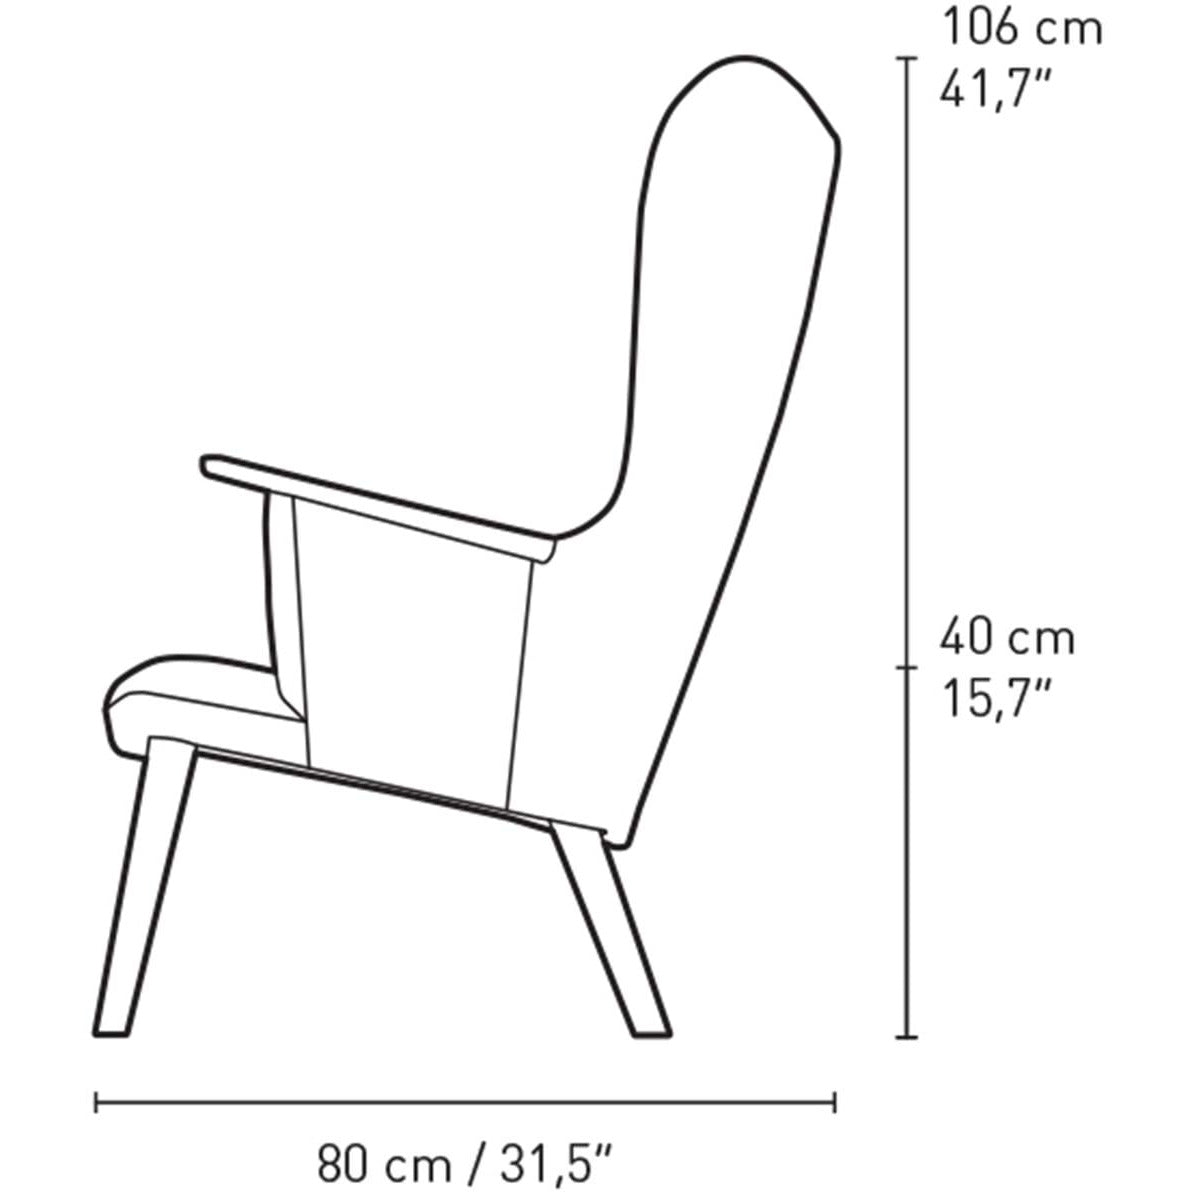 Stuhl Loungechair CH78 inkl. Nackenkissen Eiche geseift grau von